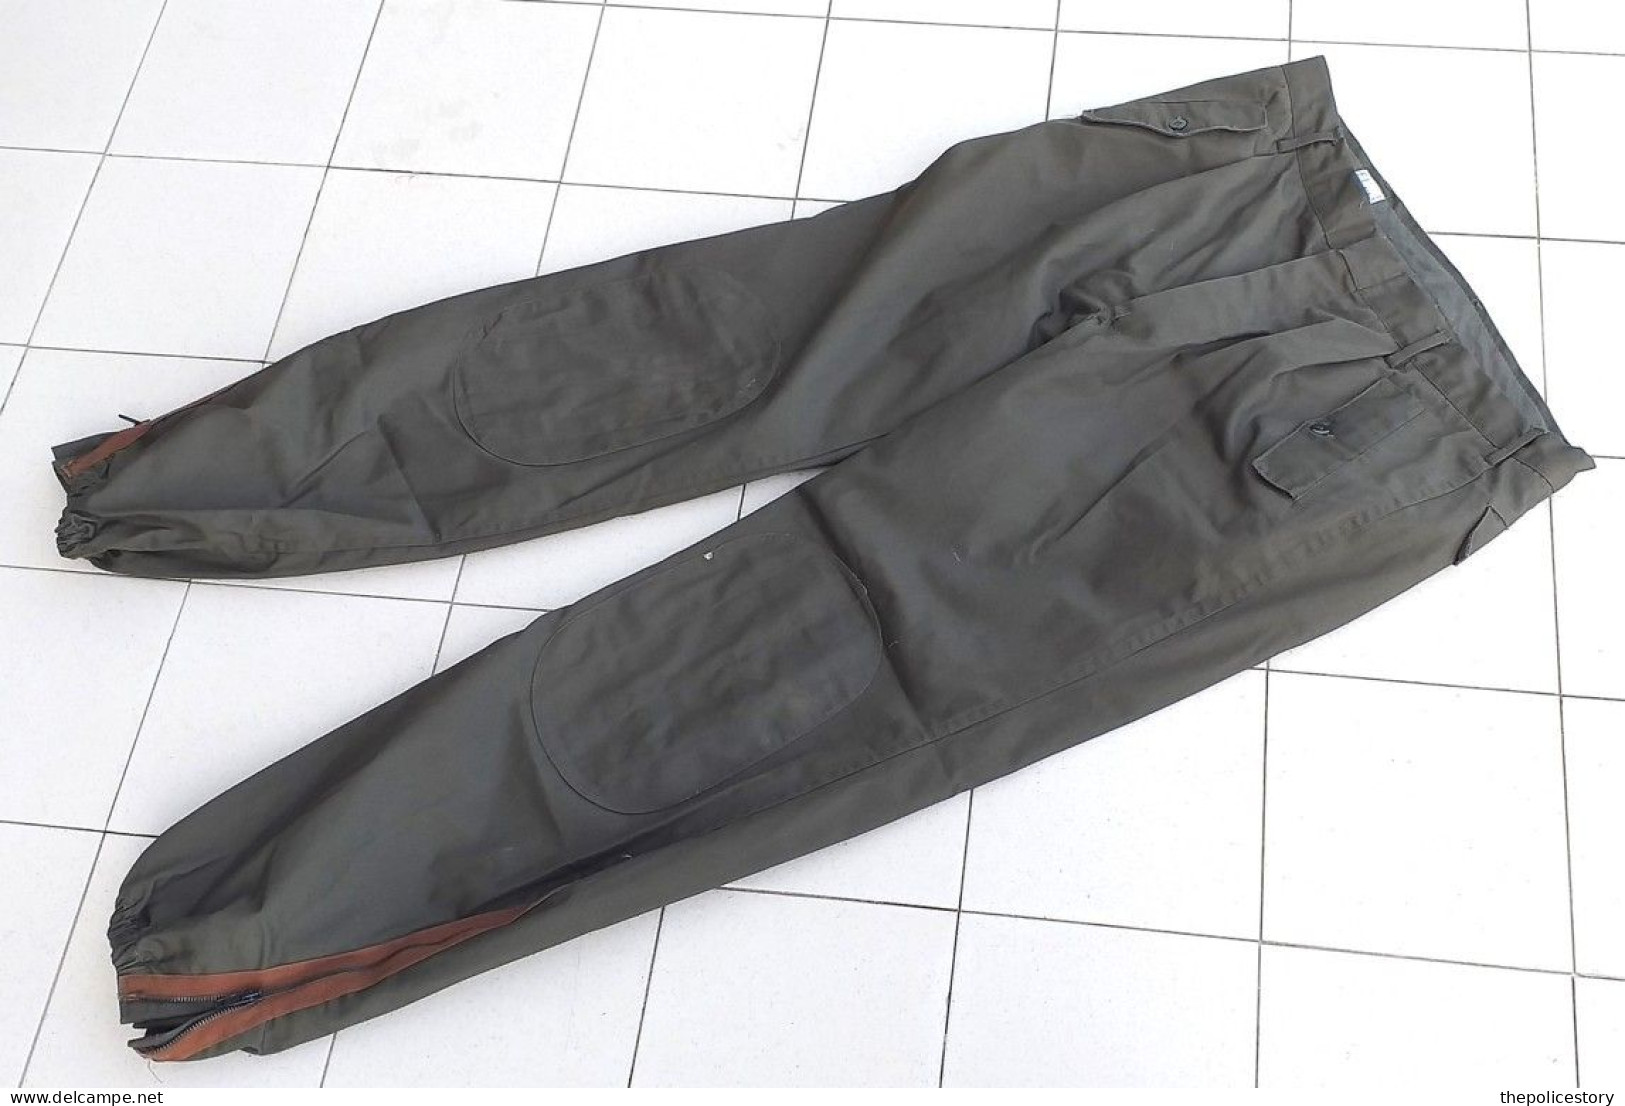 Giacca pantaloni mimetica verde E.I. tg. 52 anni '80 originale marcata